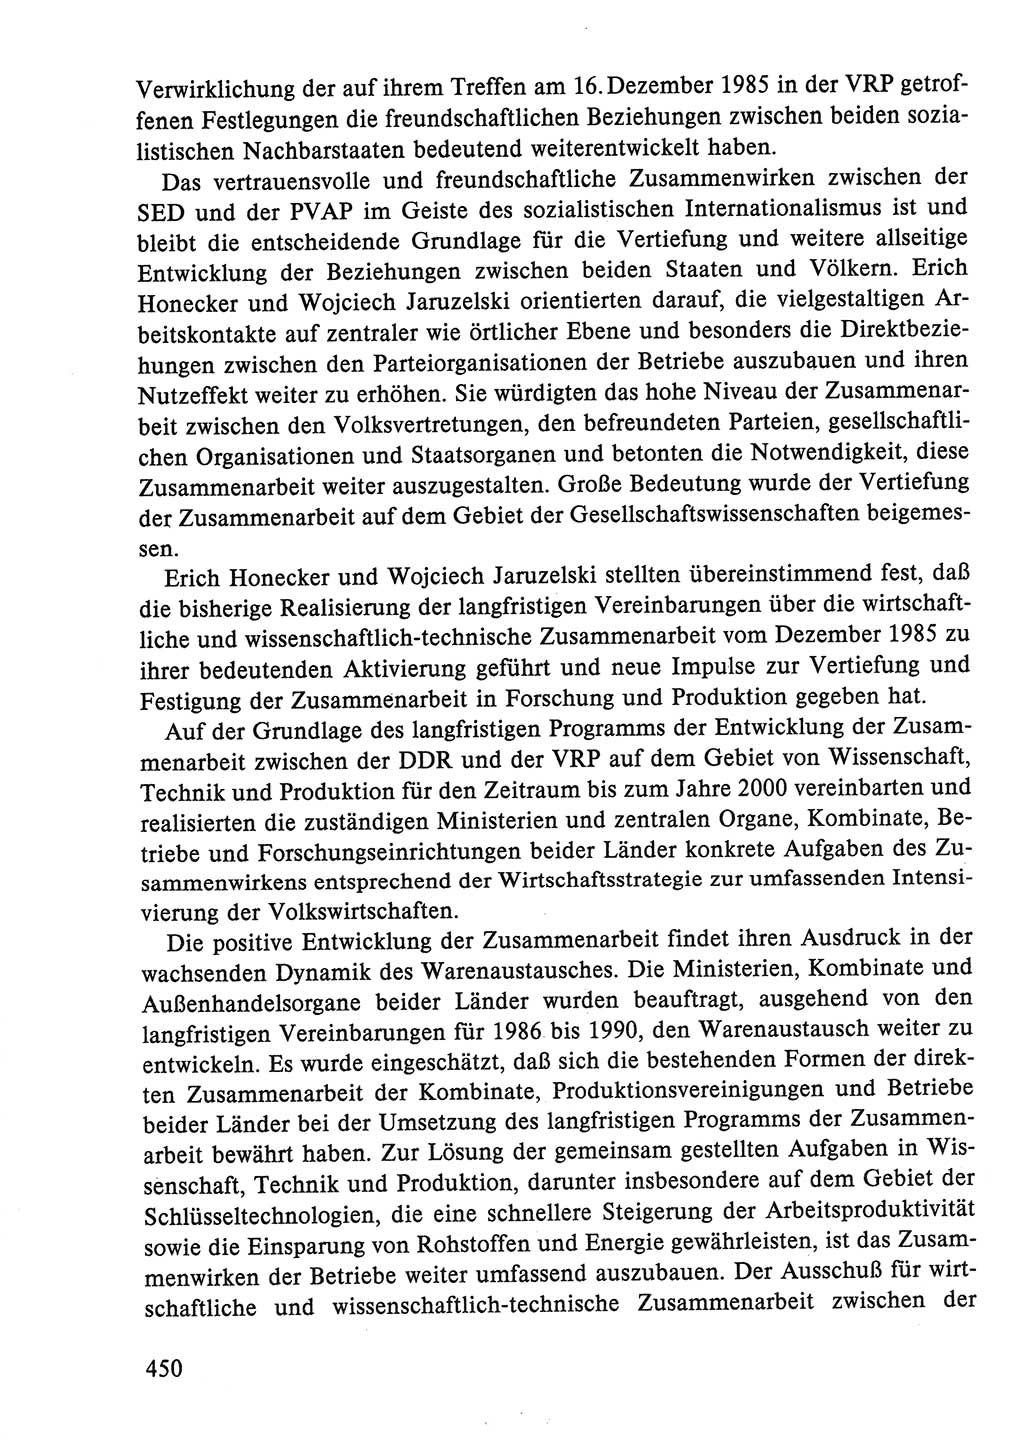 Dokumente der Sozialistischen Einheitspartei Deutschlands (SED) [Deutsche Demokratische Republik (DDR)] 1986-1987, Seite 450 (Dok. SED DDR 1986-1987, S. 450)